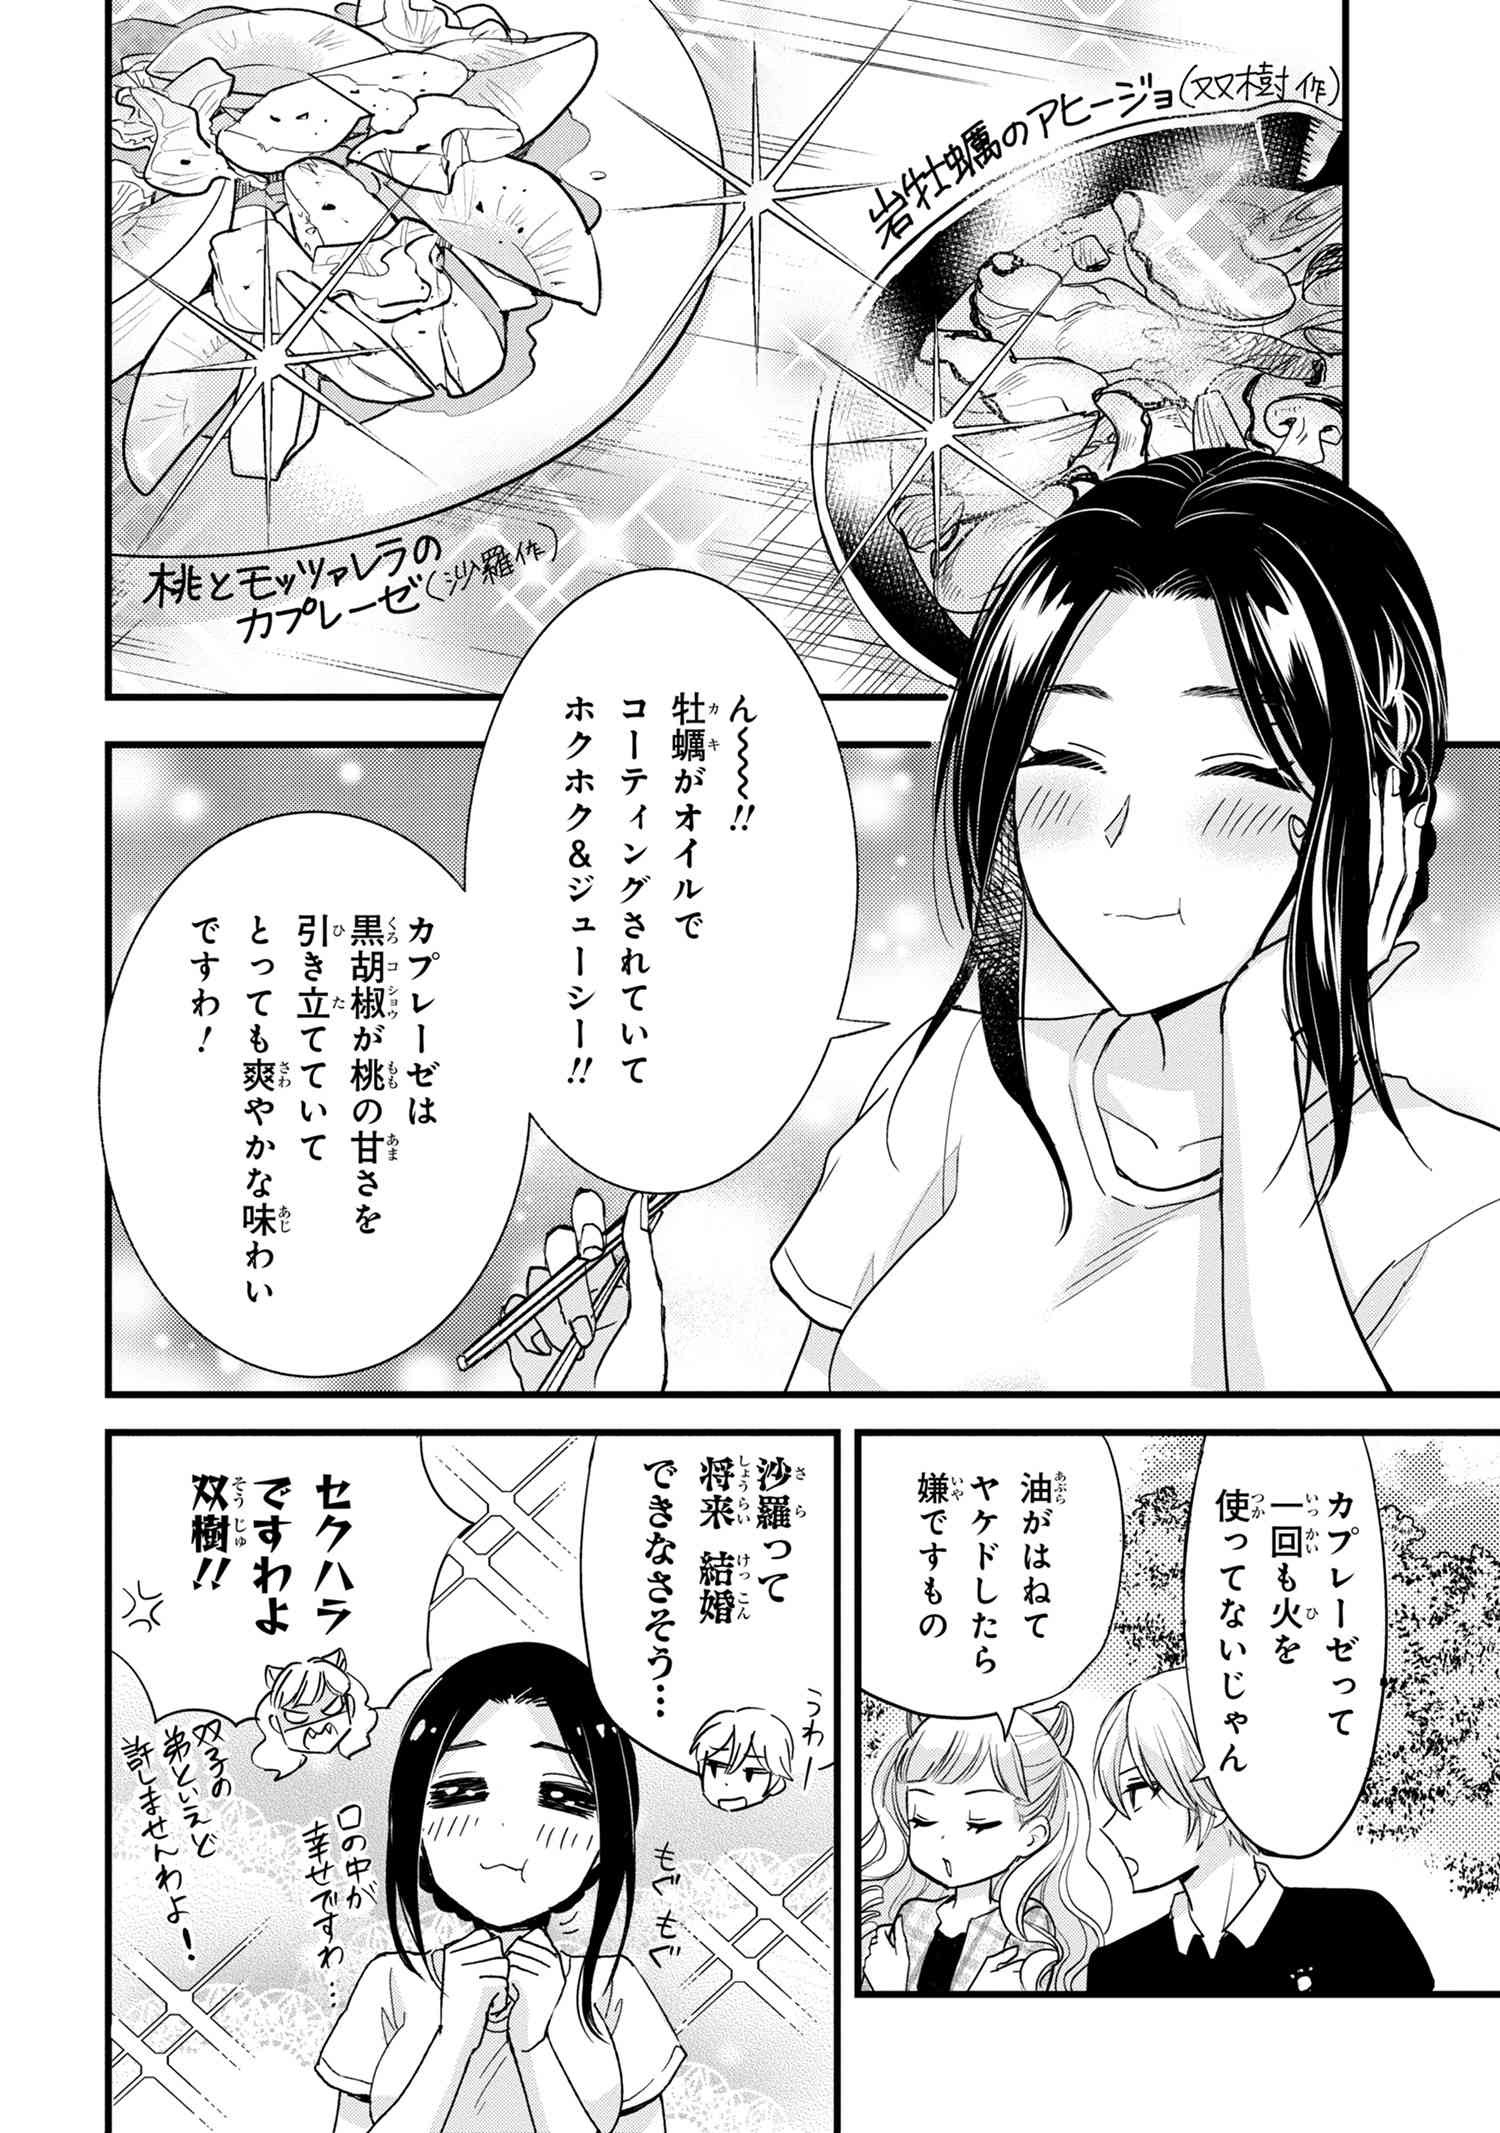 Reiko no Fuugi Akuyaku Reijou to Yobarete imasu ga, tada no Binbou Musume desu - Chapter 12.6 - Page 2